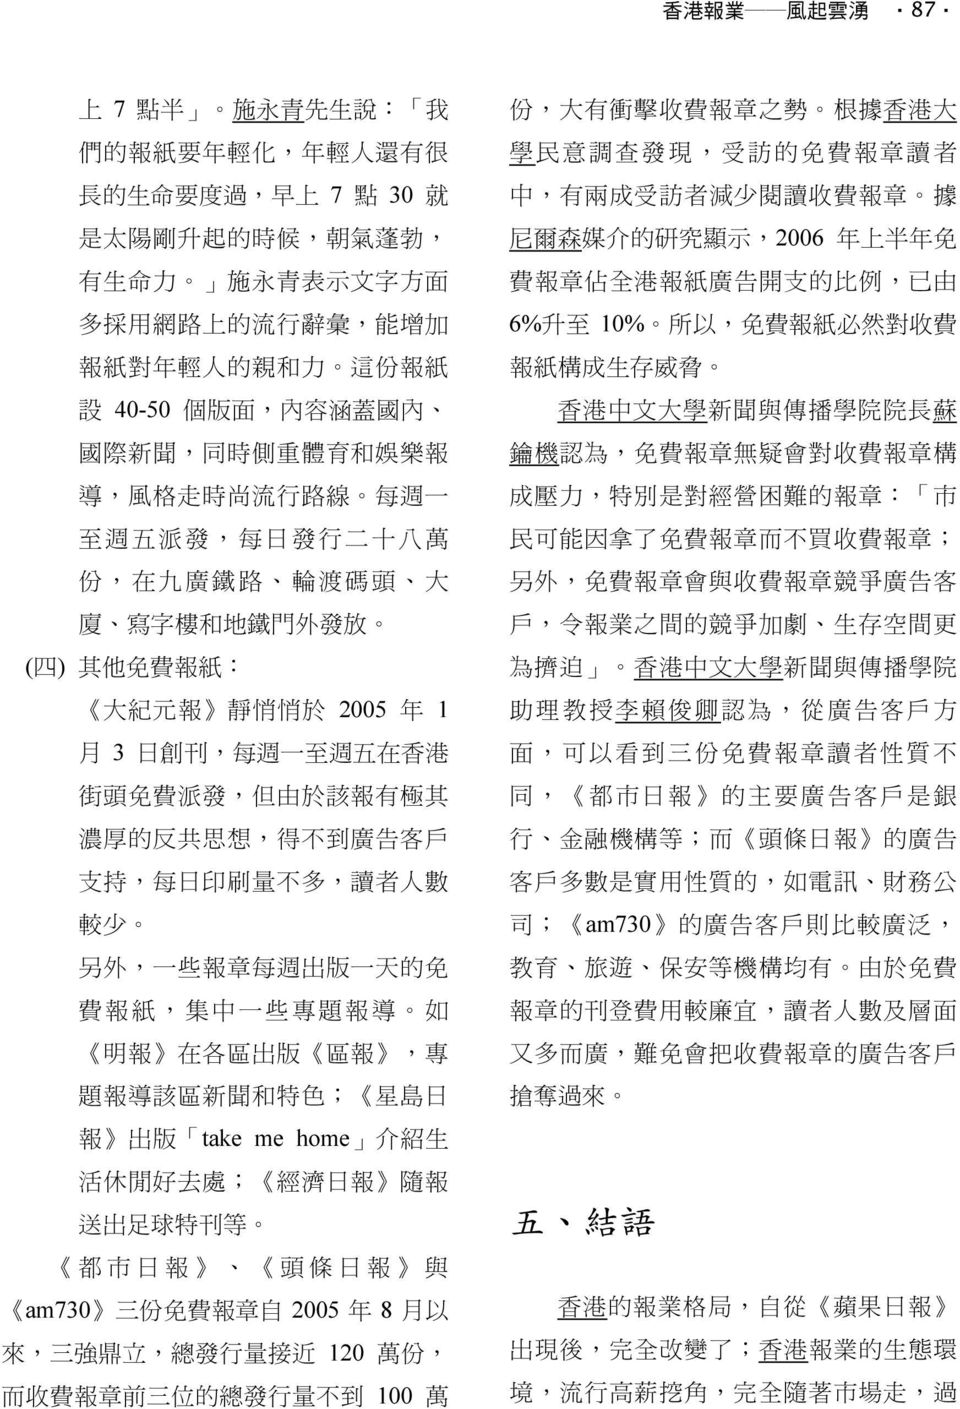 悄 於 2005 年 1 月 3 日 創 刊, 每 週 一 至 週 五 在 香 港 街 頭 免 費 派 發, 但 由 於 該 報 有 極 其 濃 厚 的 反 共 思 想, 得 不 到 廣 告 客 戶 支 持, 每 日 印 刷 量 不 多, 讀 者 人 數 較 少 另 外, 一 些 報 章 每 週 出 版 一 天 的 免 費 報 紙, 集 中 一 些 專 題 報 導 如 明 報 在 各 區 出 版